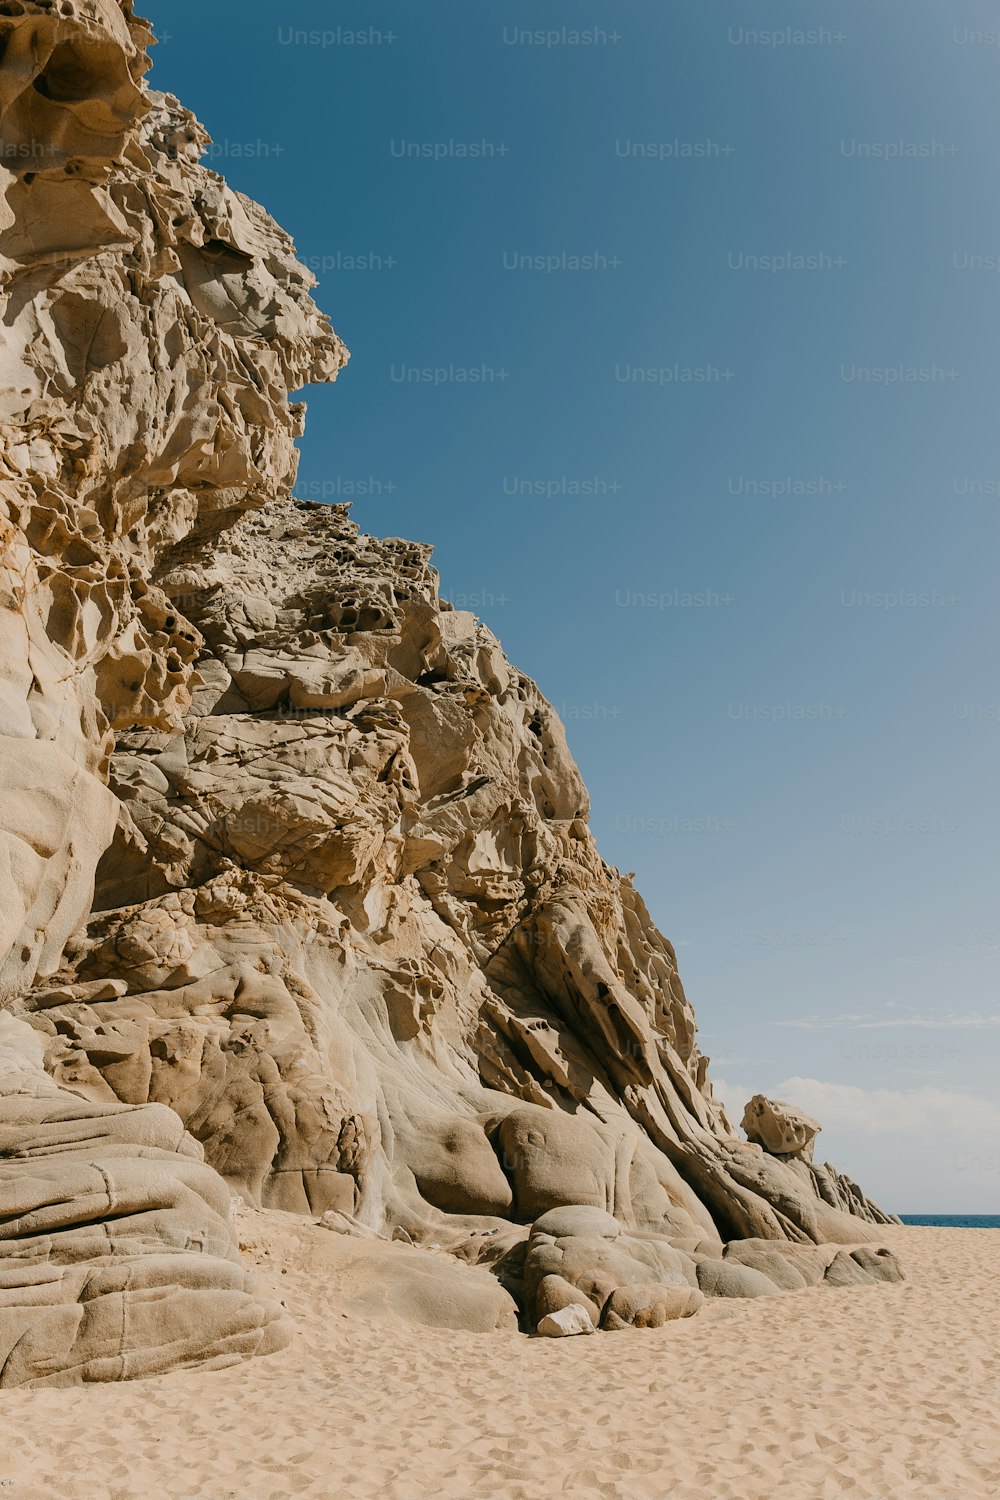 una playa de arena con una gran formación rocosa en la parte superior